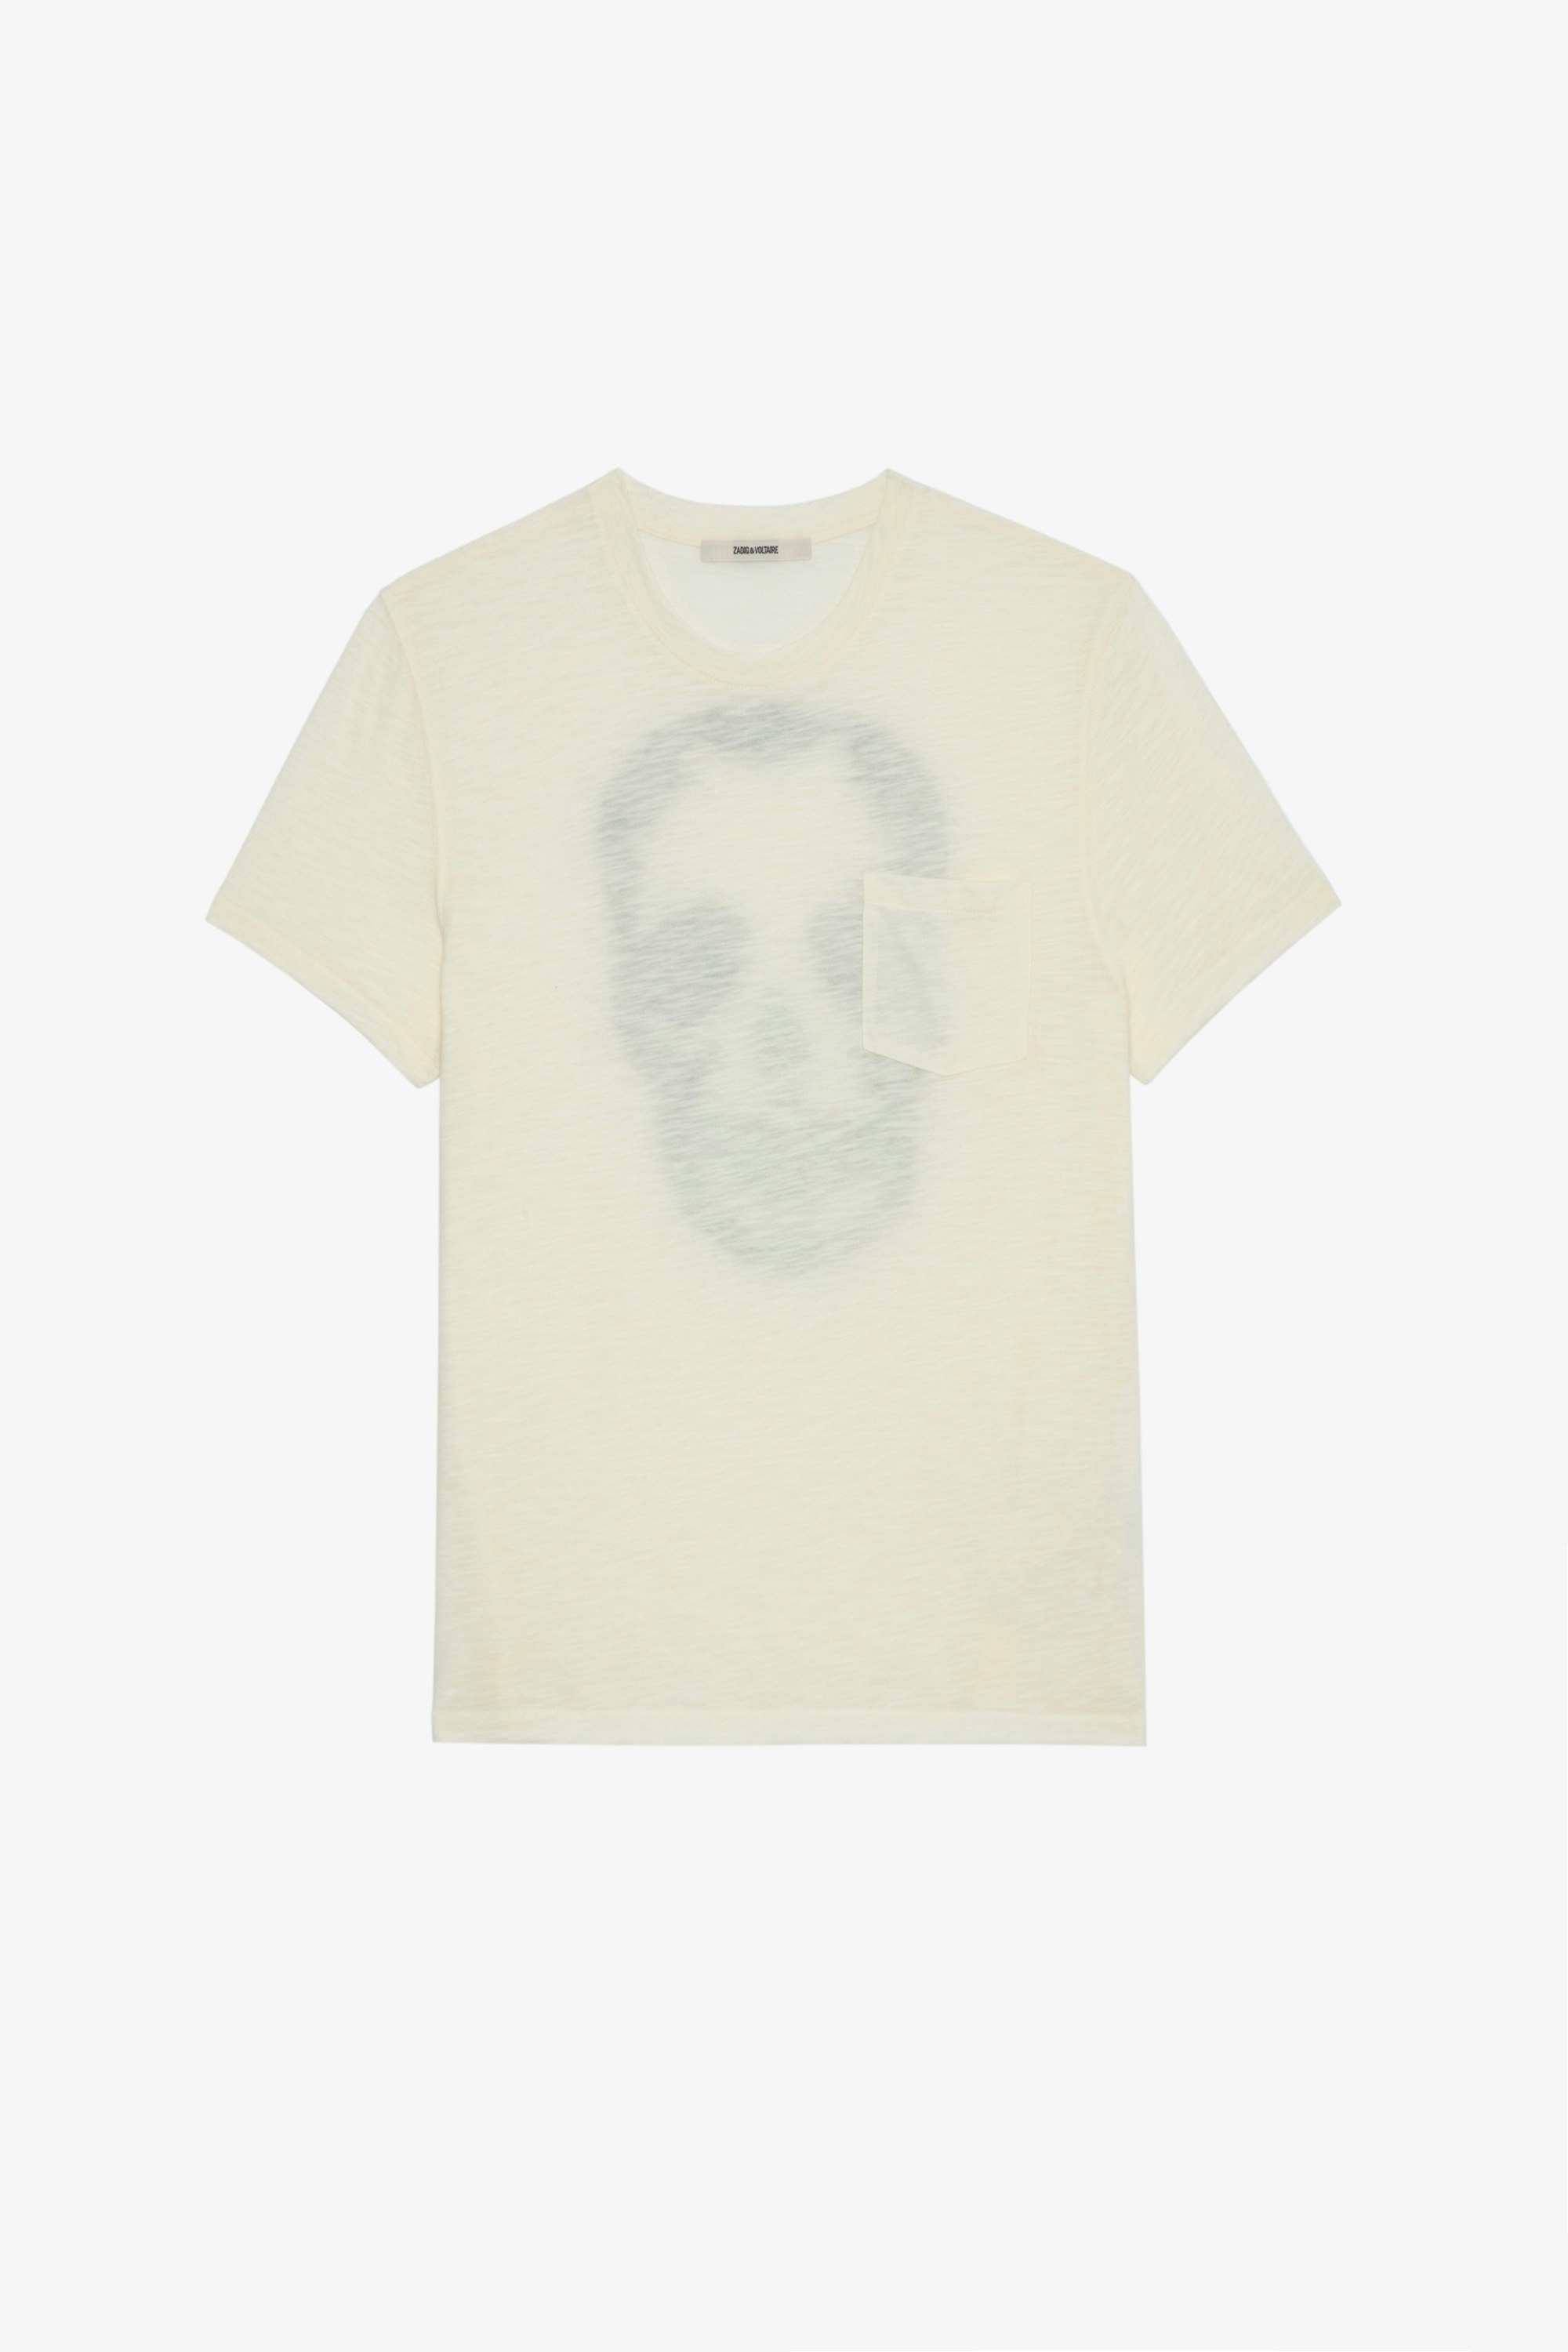 T-Shirt Stockholm Geflammt Herren-T-Shirt aus ecrufarbener, geflammter Baumwolle mit Totenkopf auf dem Rücken